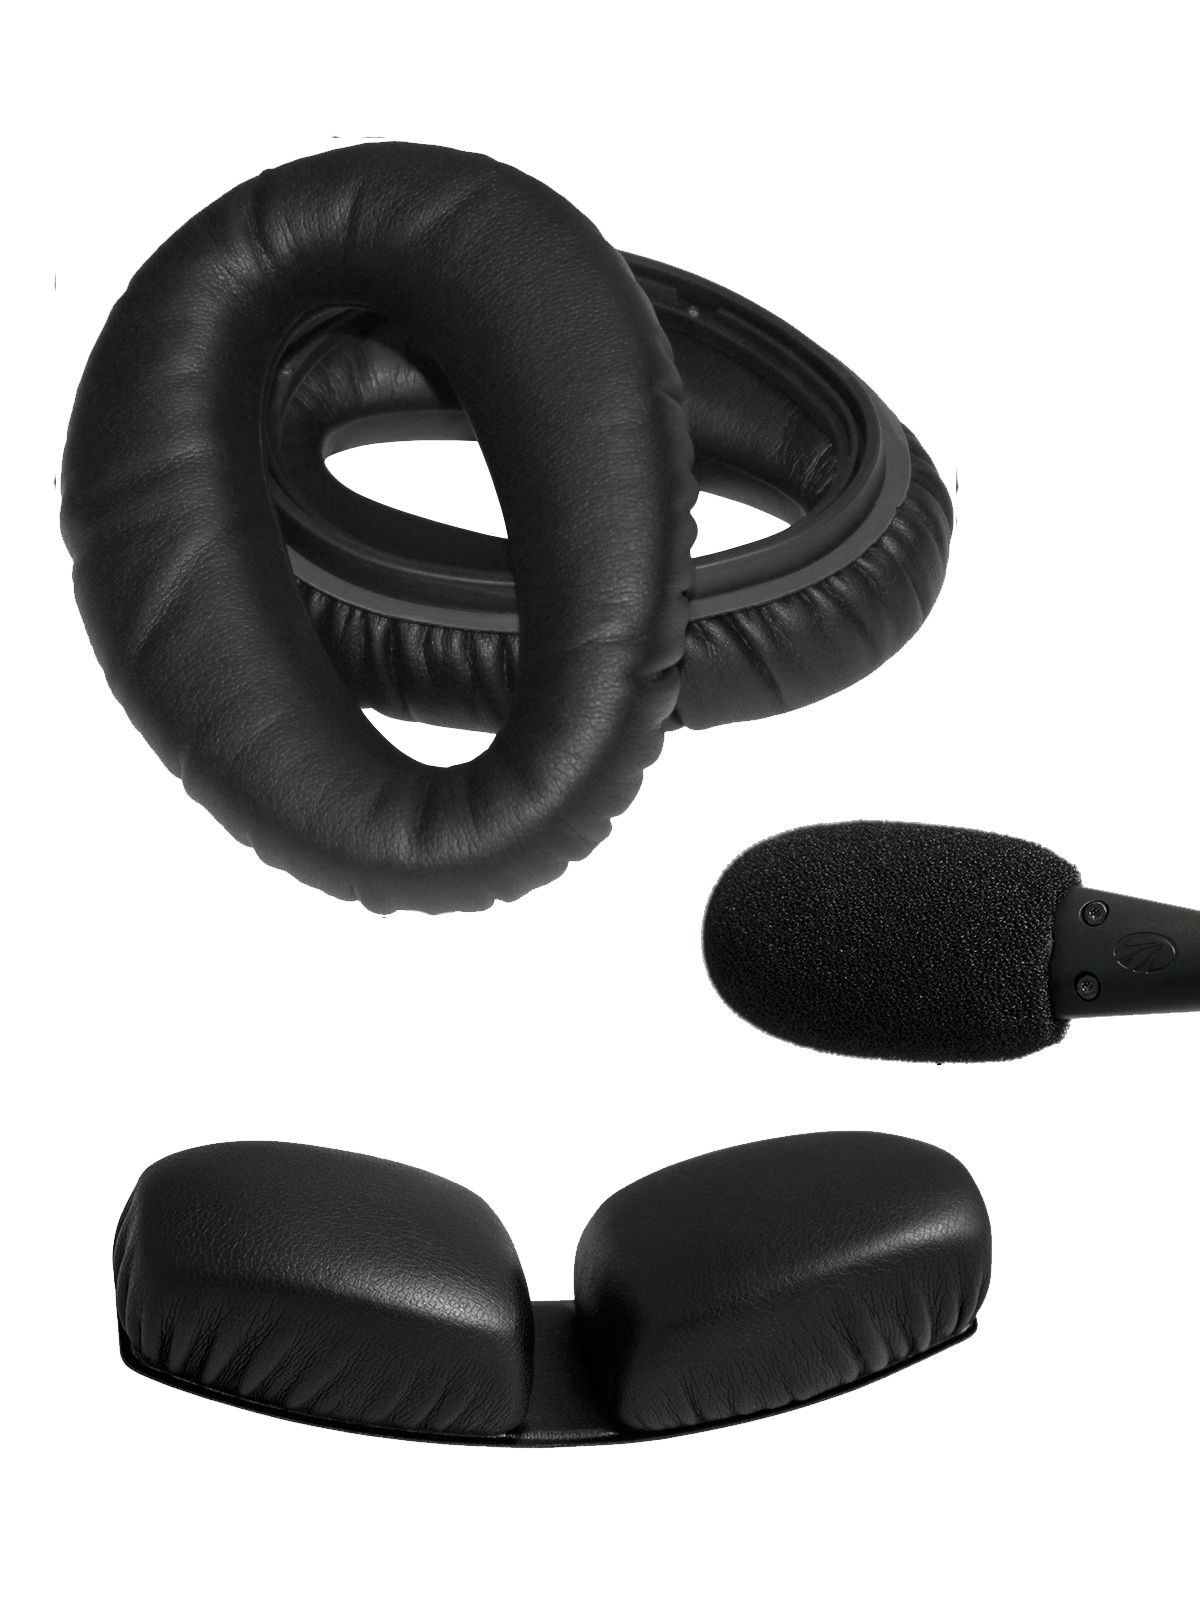 Lightspeed Deluxe Accessory Kit for Zulu Headsets - Ear Seals, Deluxe Head Pad, Windscreen